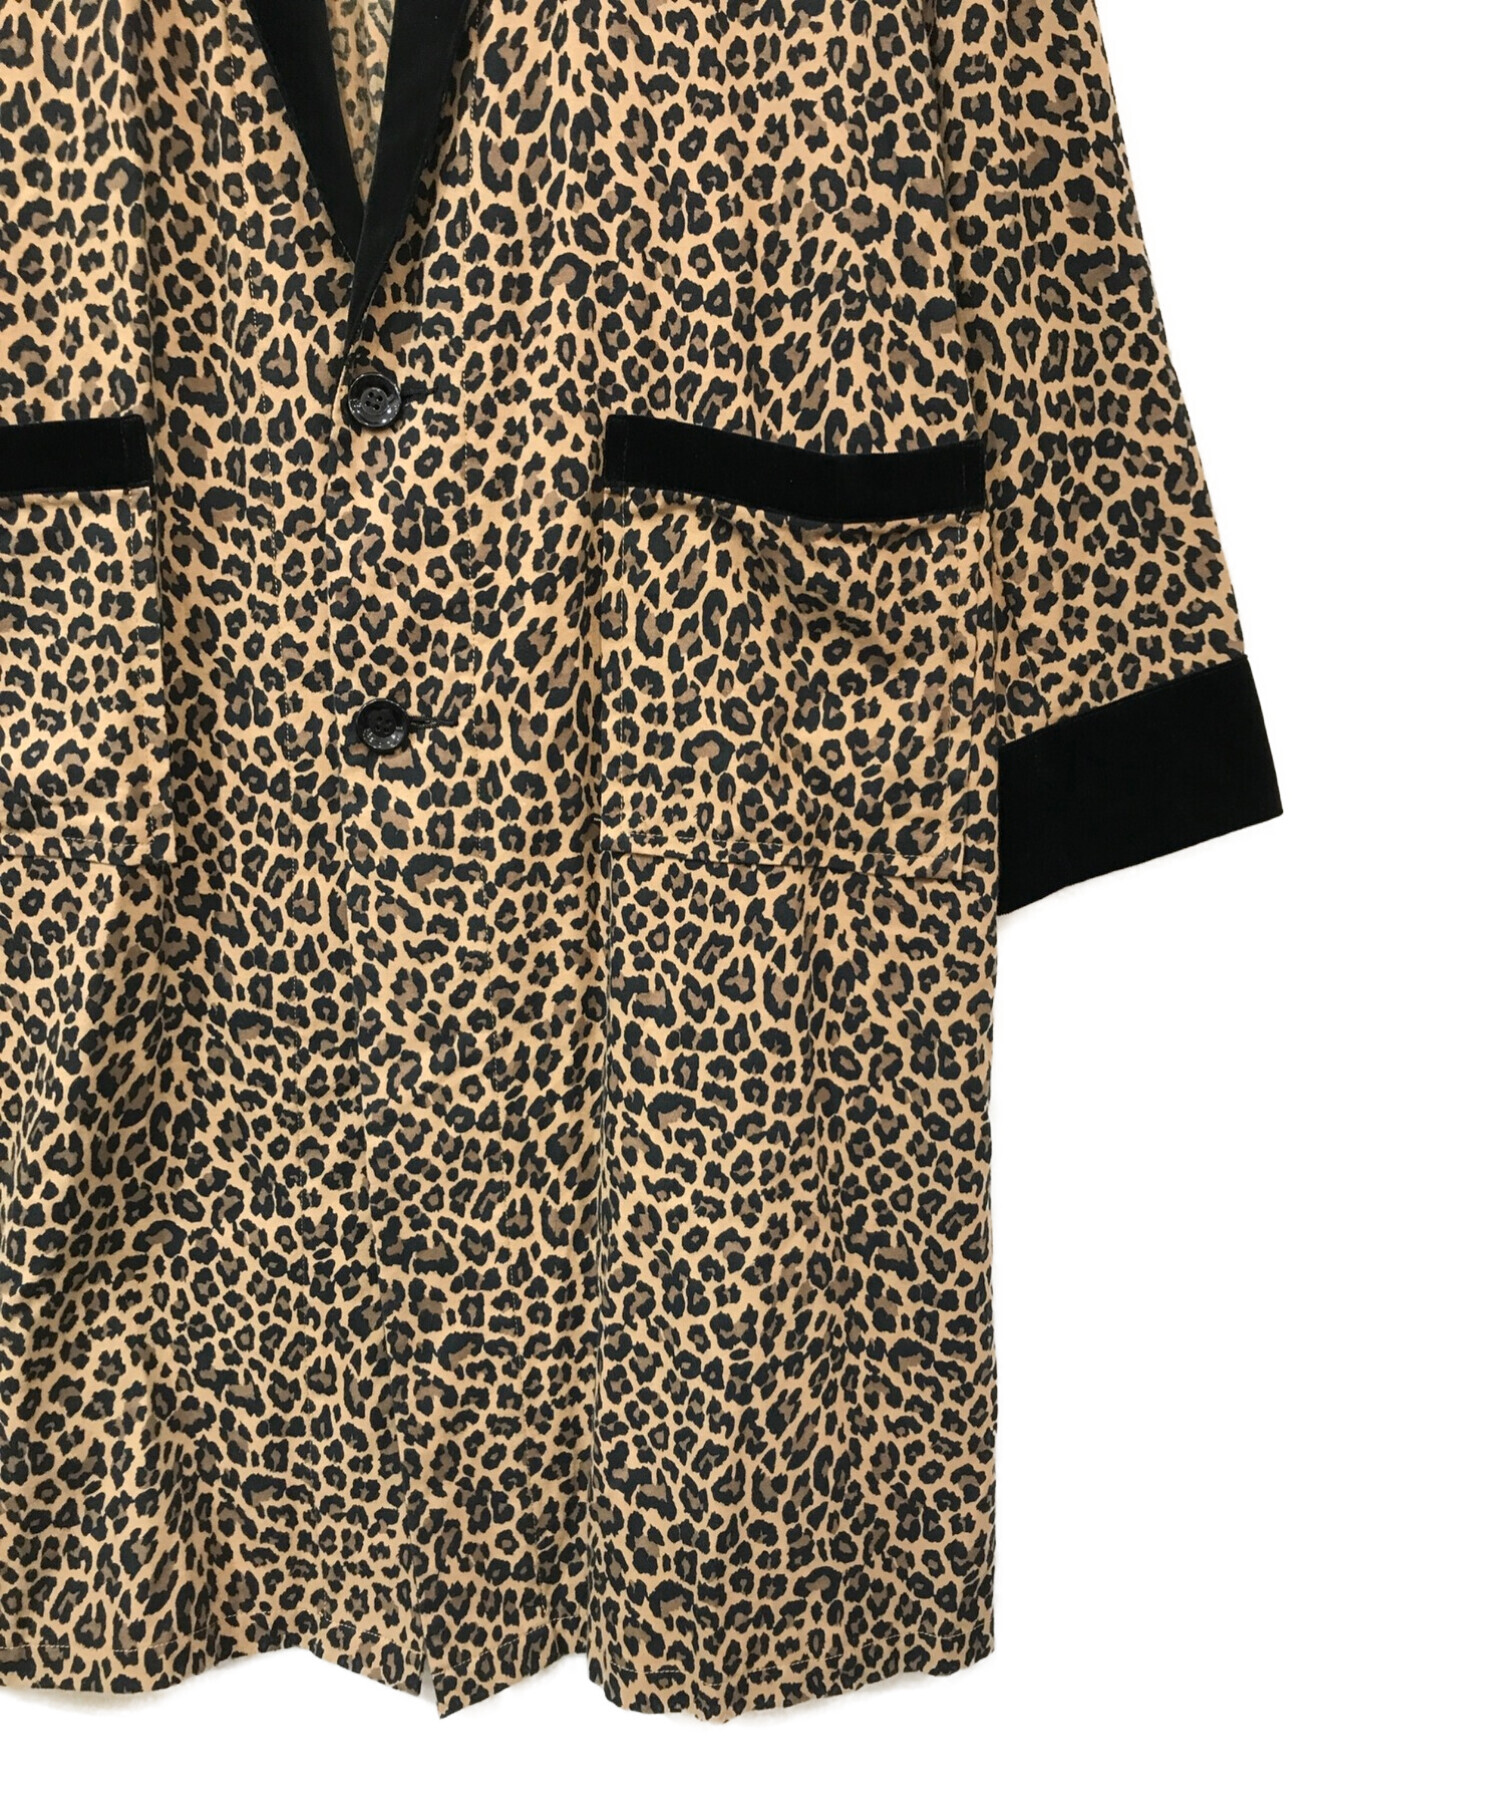 中古・古着通販】MINEDENIM (マインデニム) flannel leopard gawn